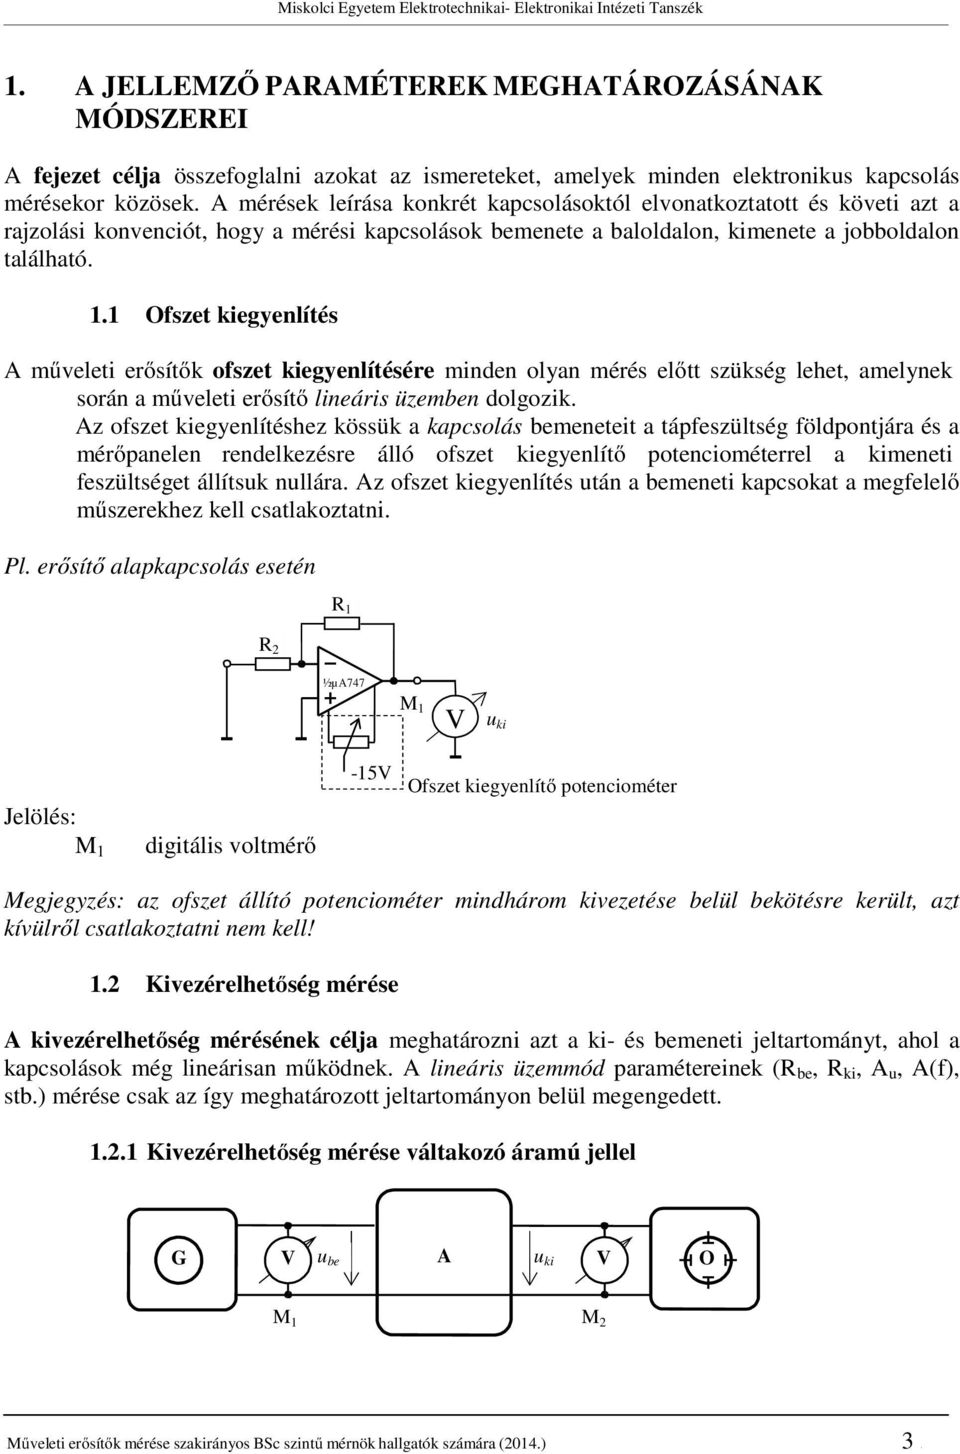 MŰVELETI ERŐSÍTŐS KAPCSOLÁSOK MÉRÉSE (DR. Kovács Ernő jegyzete alapján) -  PDF Free Download